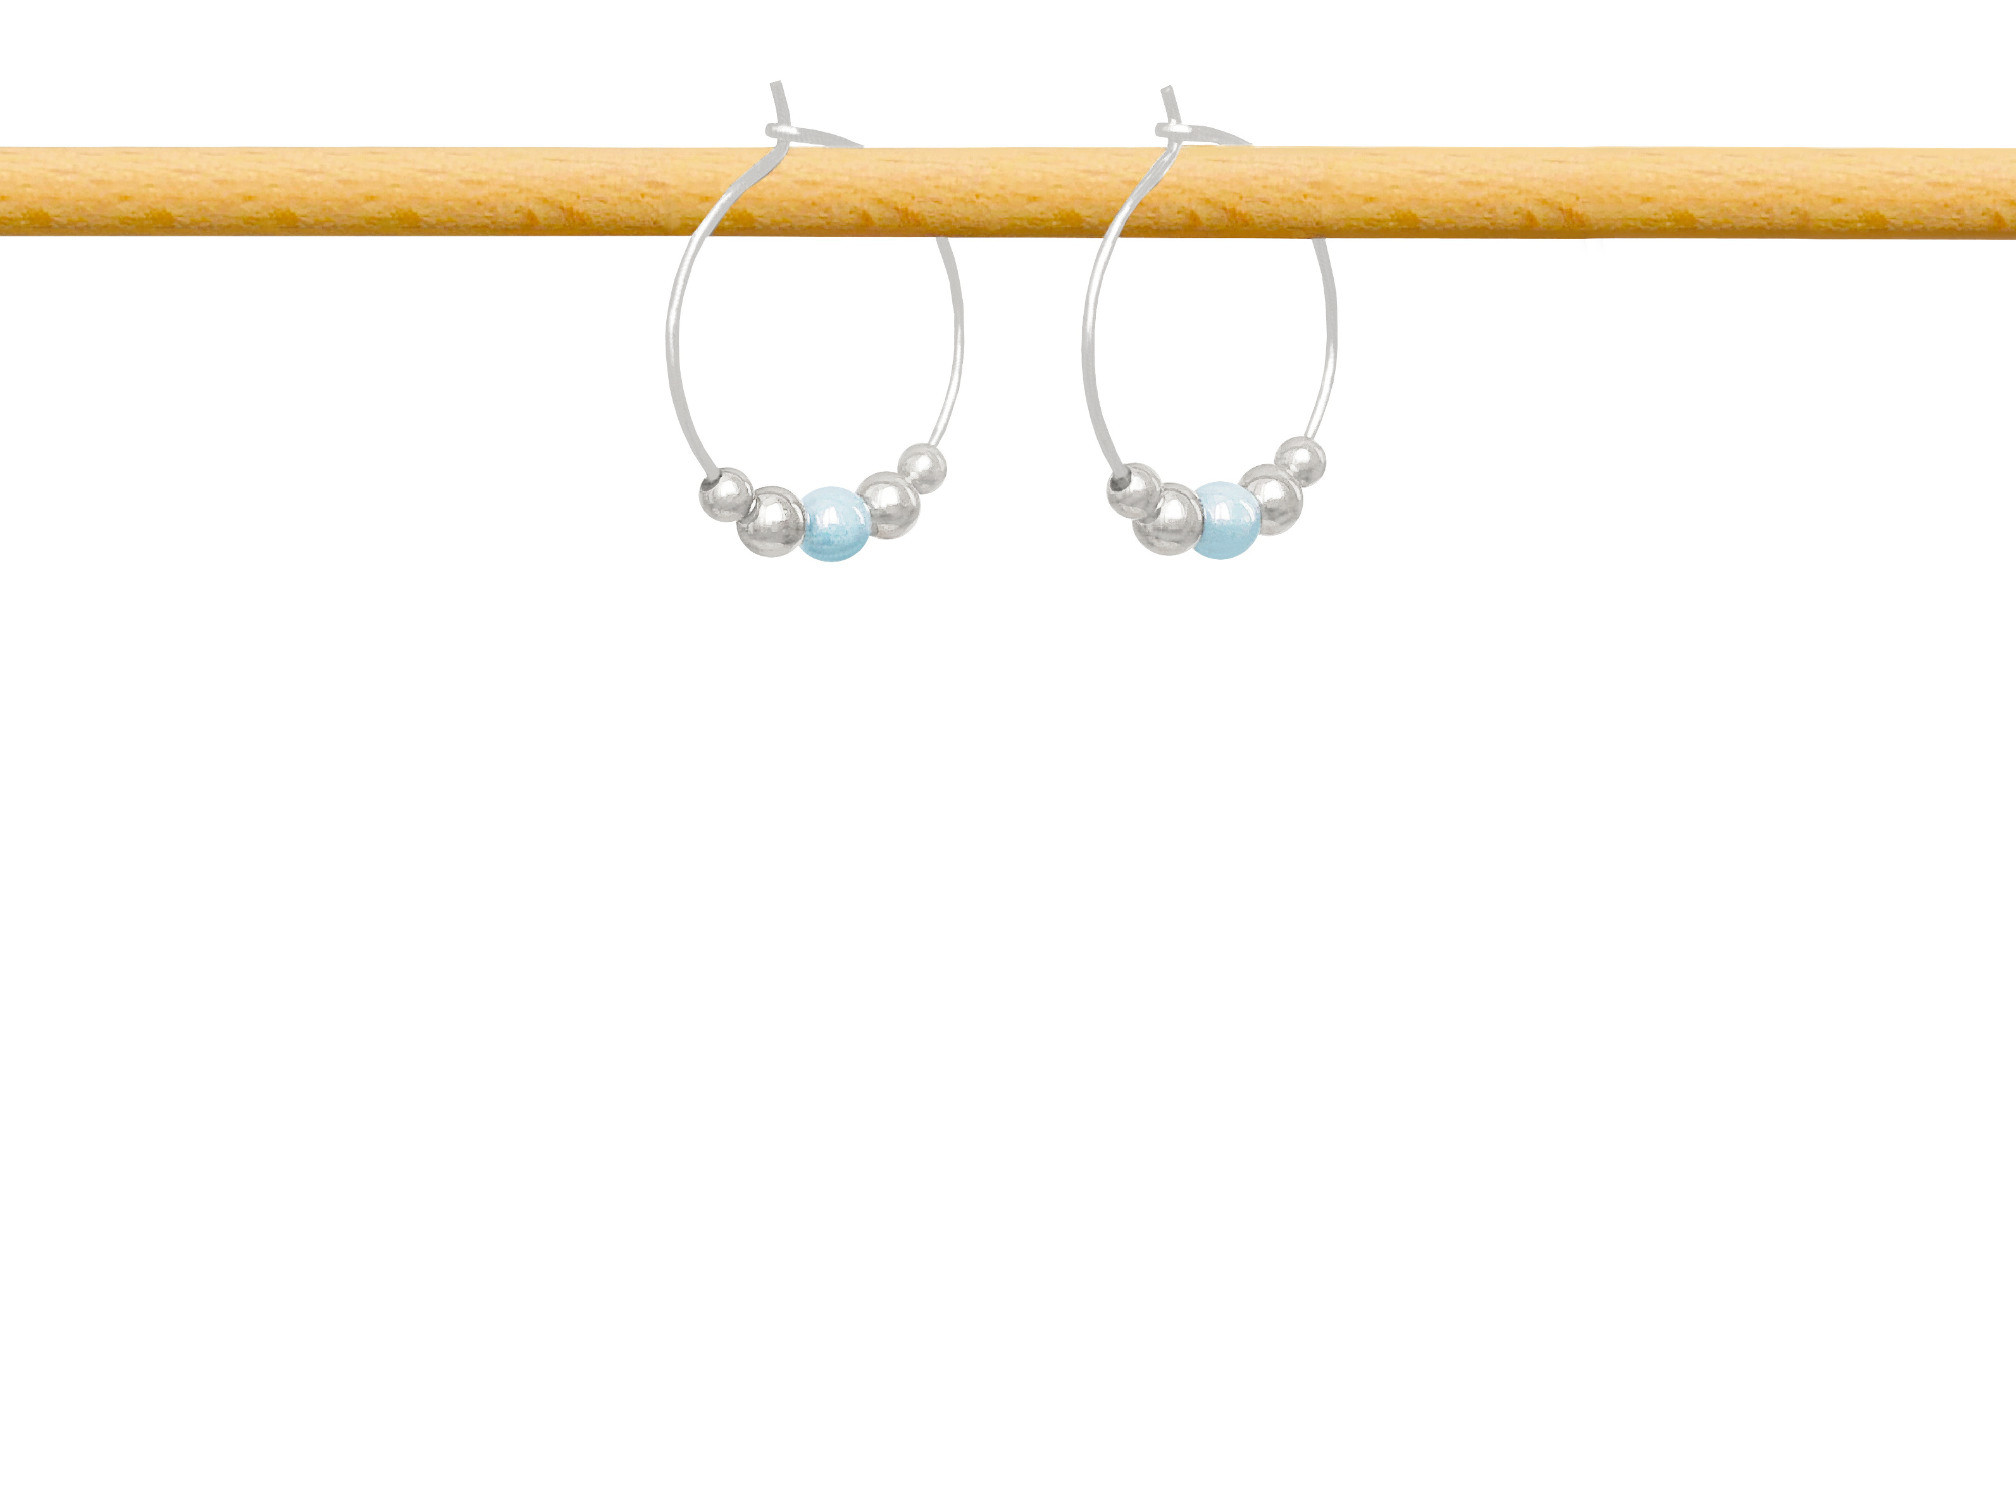 Boucles d'oreilles IFATE2 créoles acier inoxydable argent perle couleur bleue-minimaliste-bohème- MARJANE et Cie